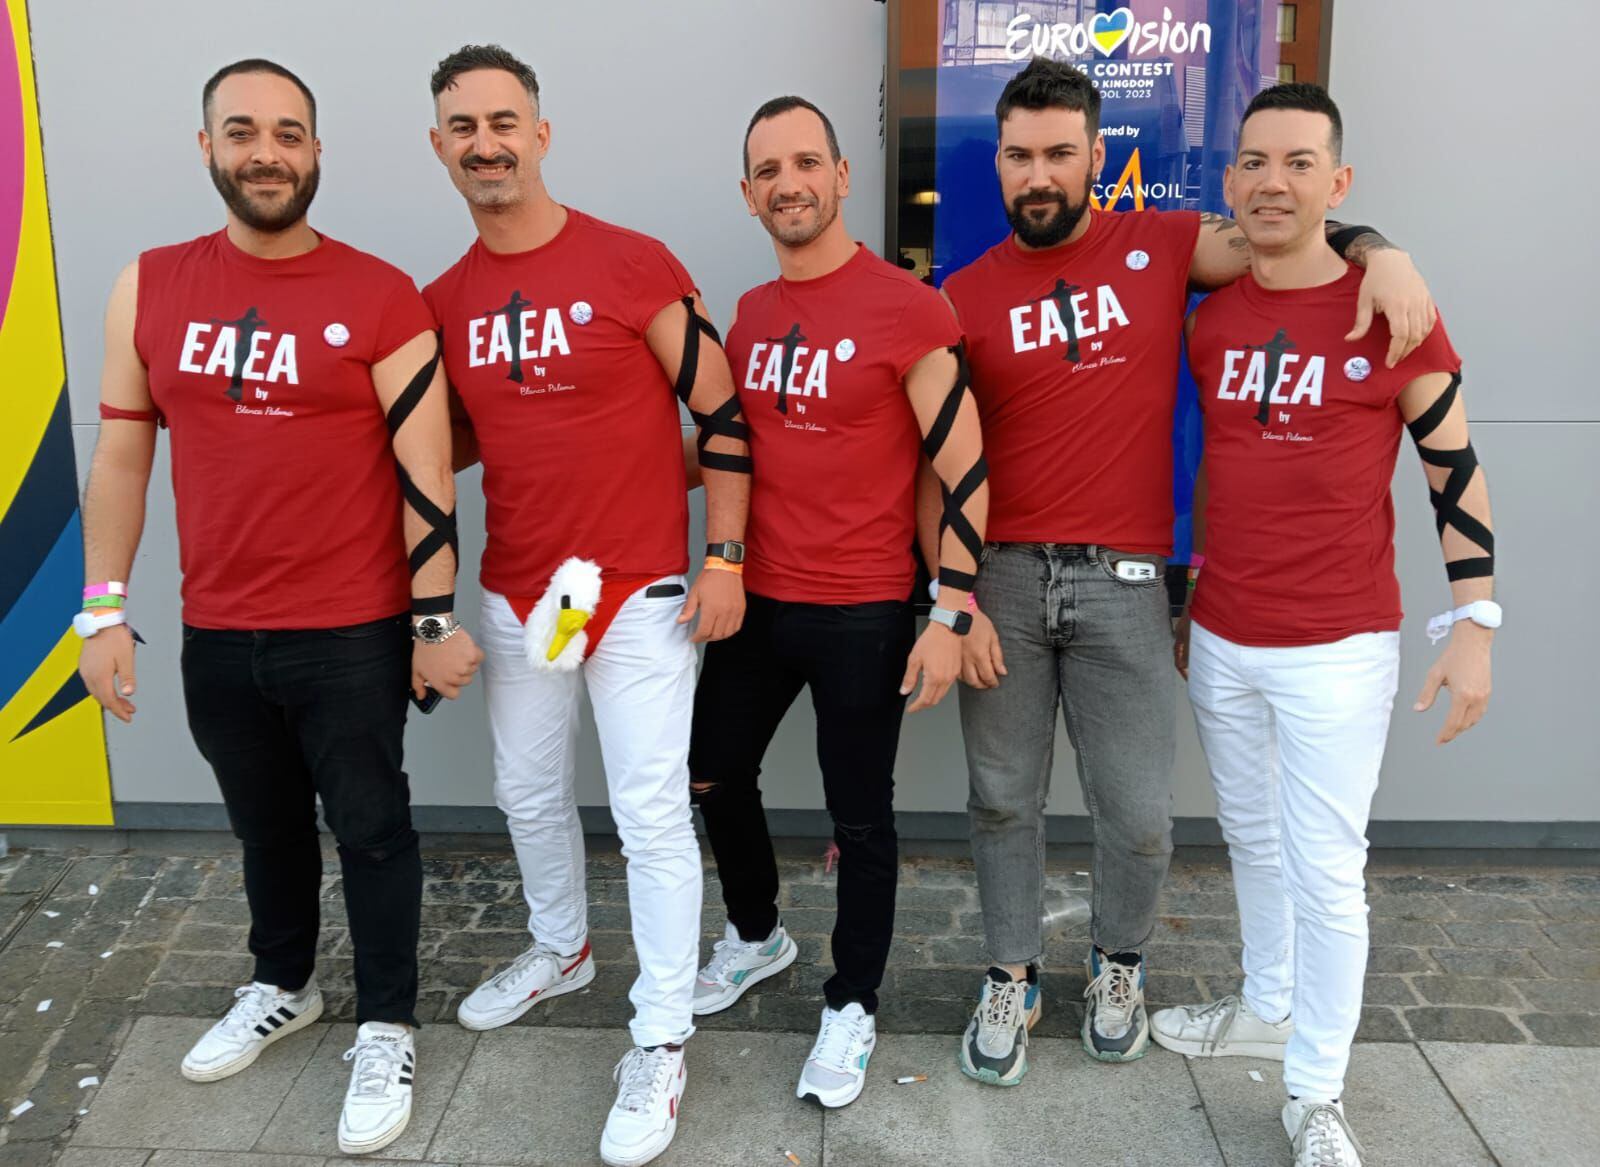 Cinco seguidores españoles vestidos con referencias a la actuación de Blanca Paloma, en la puerta del M&S Bank Arena de Liverpool el sábado por la tarde.